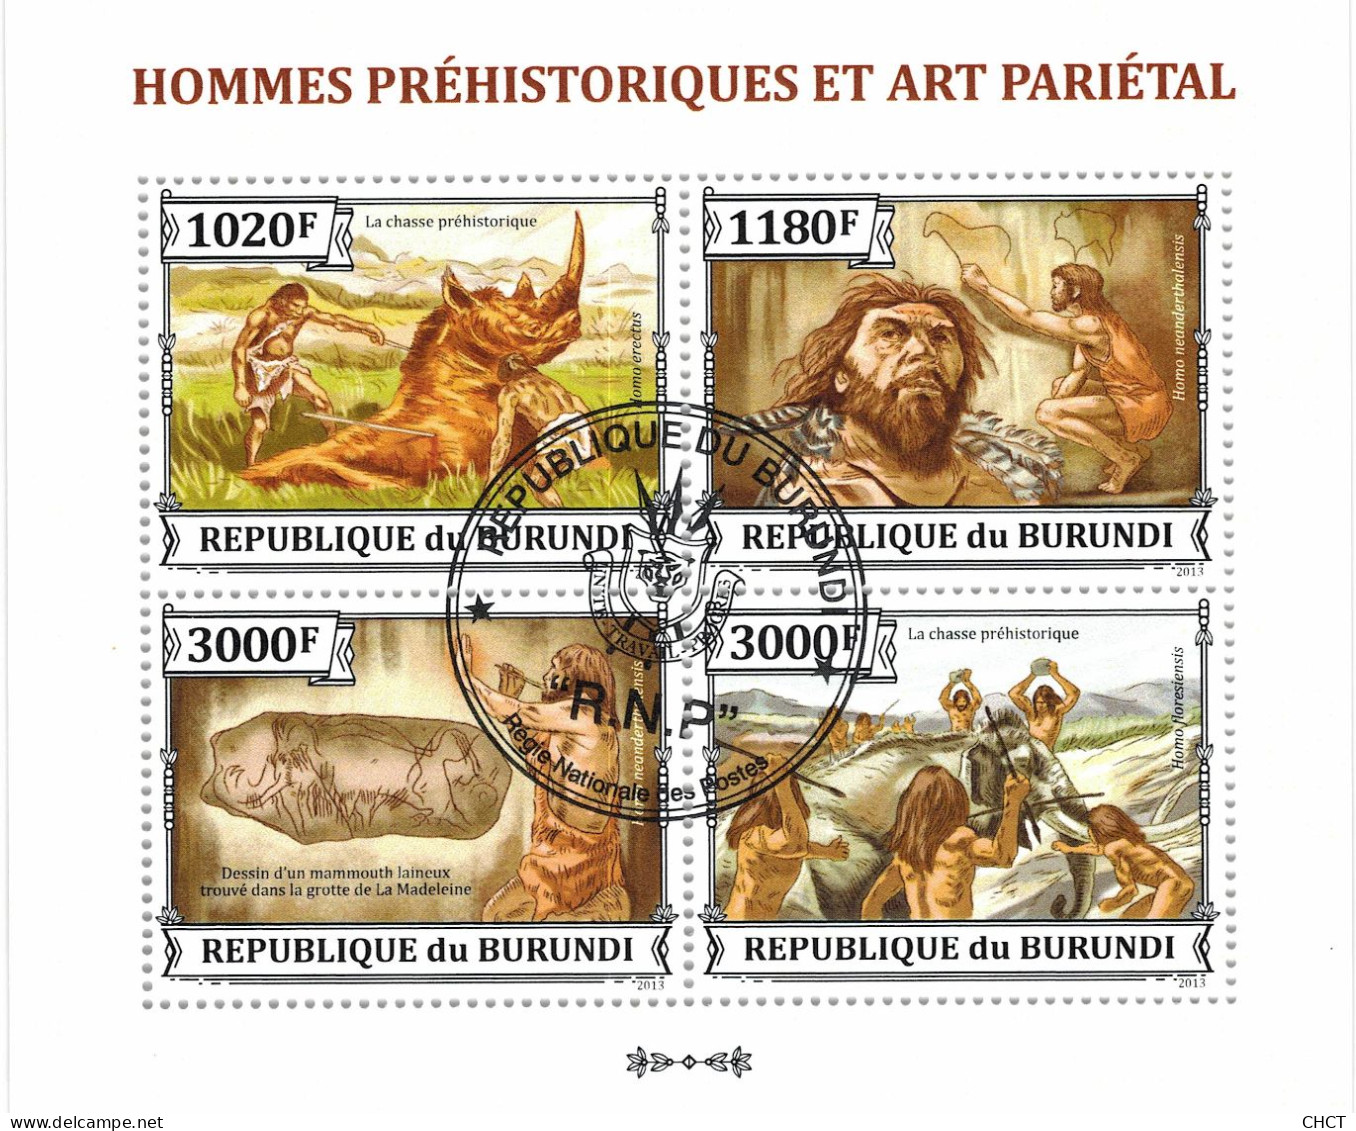 CHCT65 - Prehistoric Humans & Art, History, Stamp Mini Sheet, Used CTO, 2013, Burundi - Gebraucht